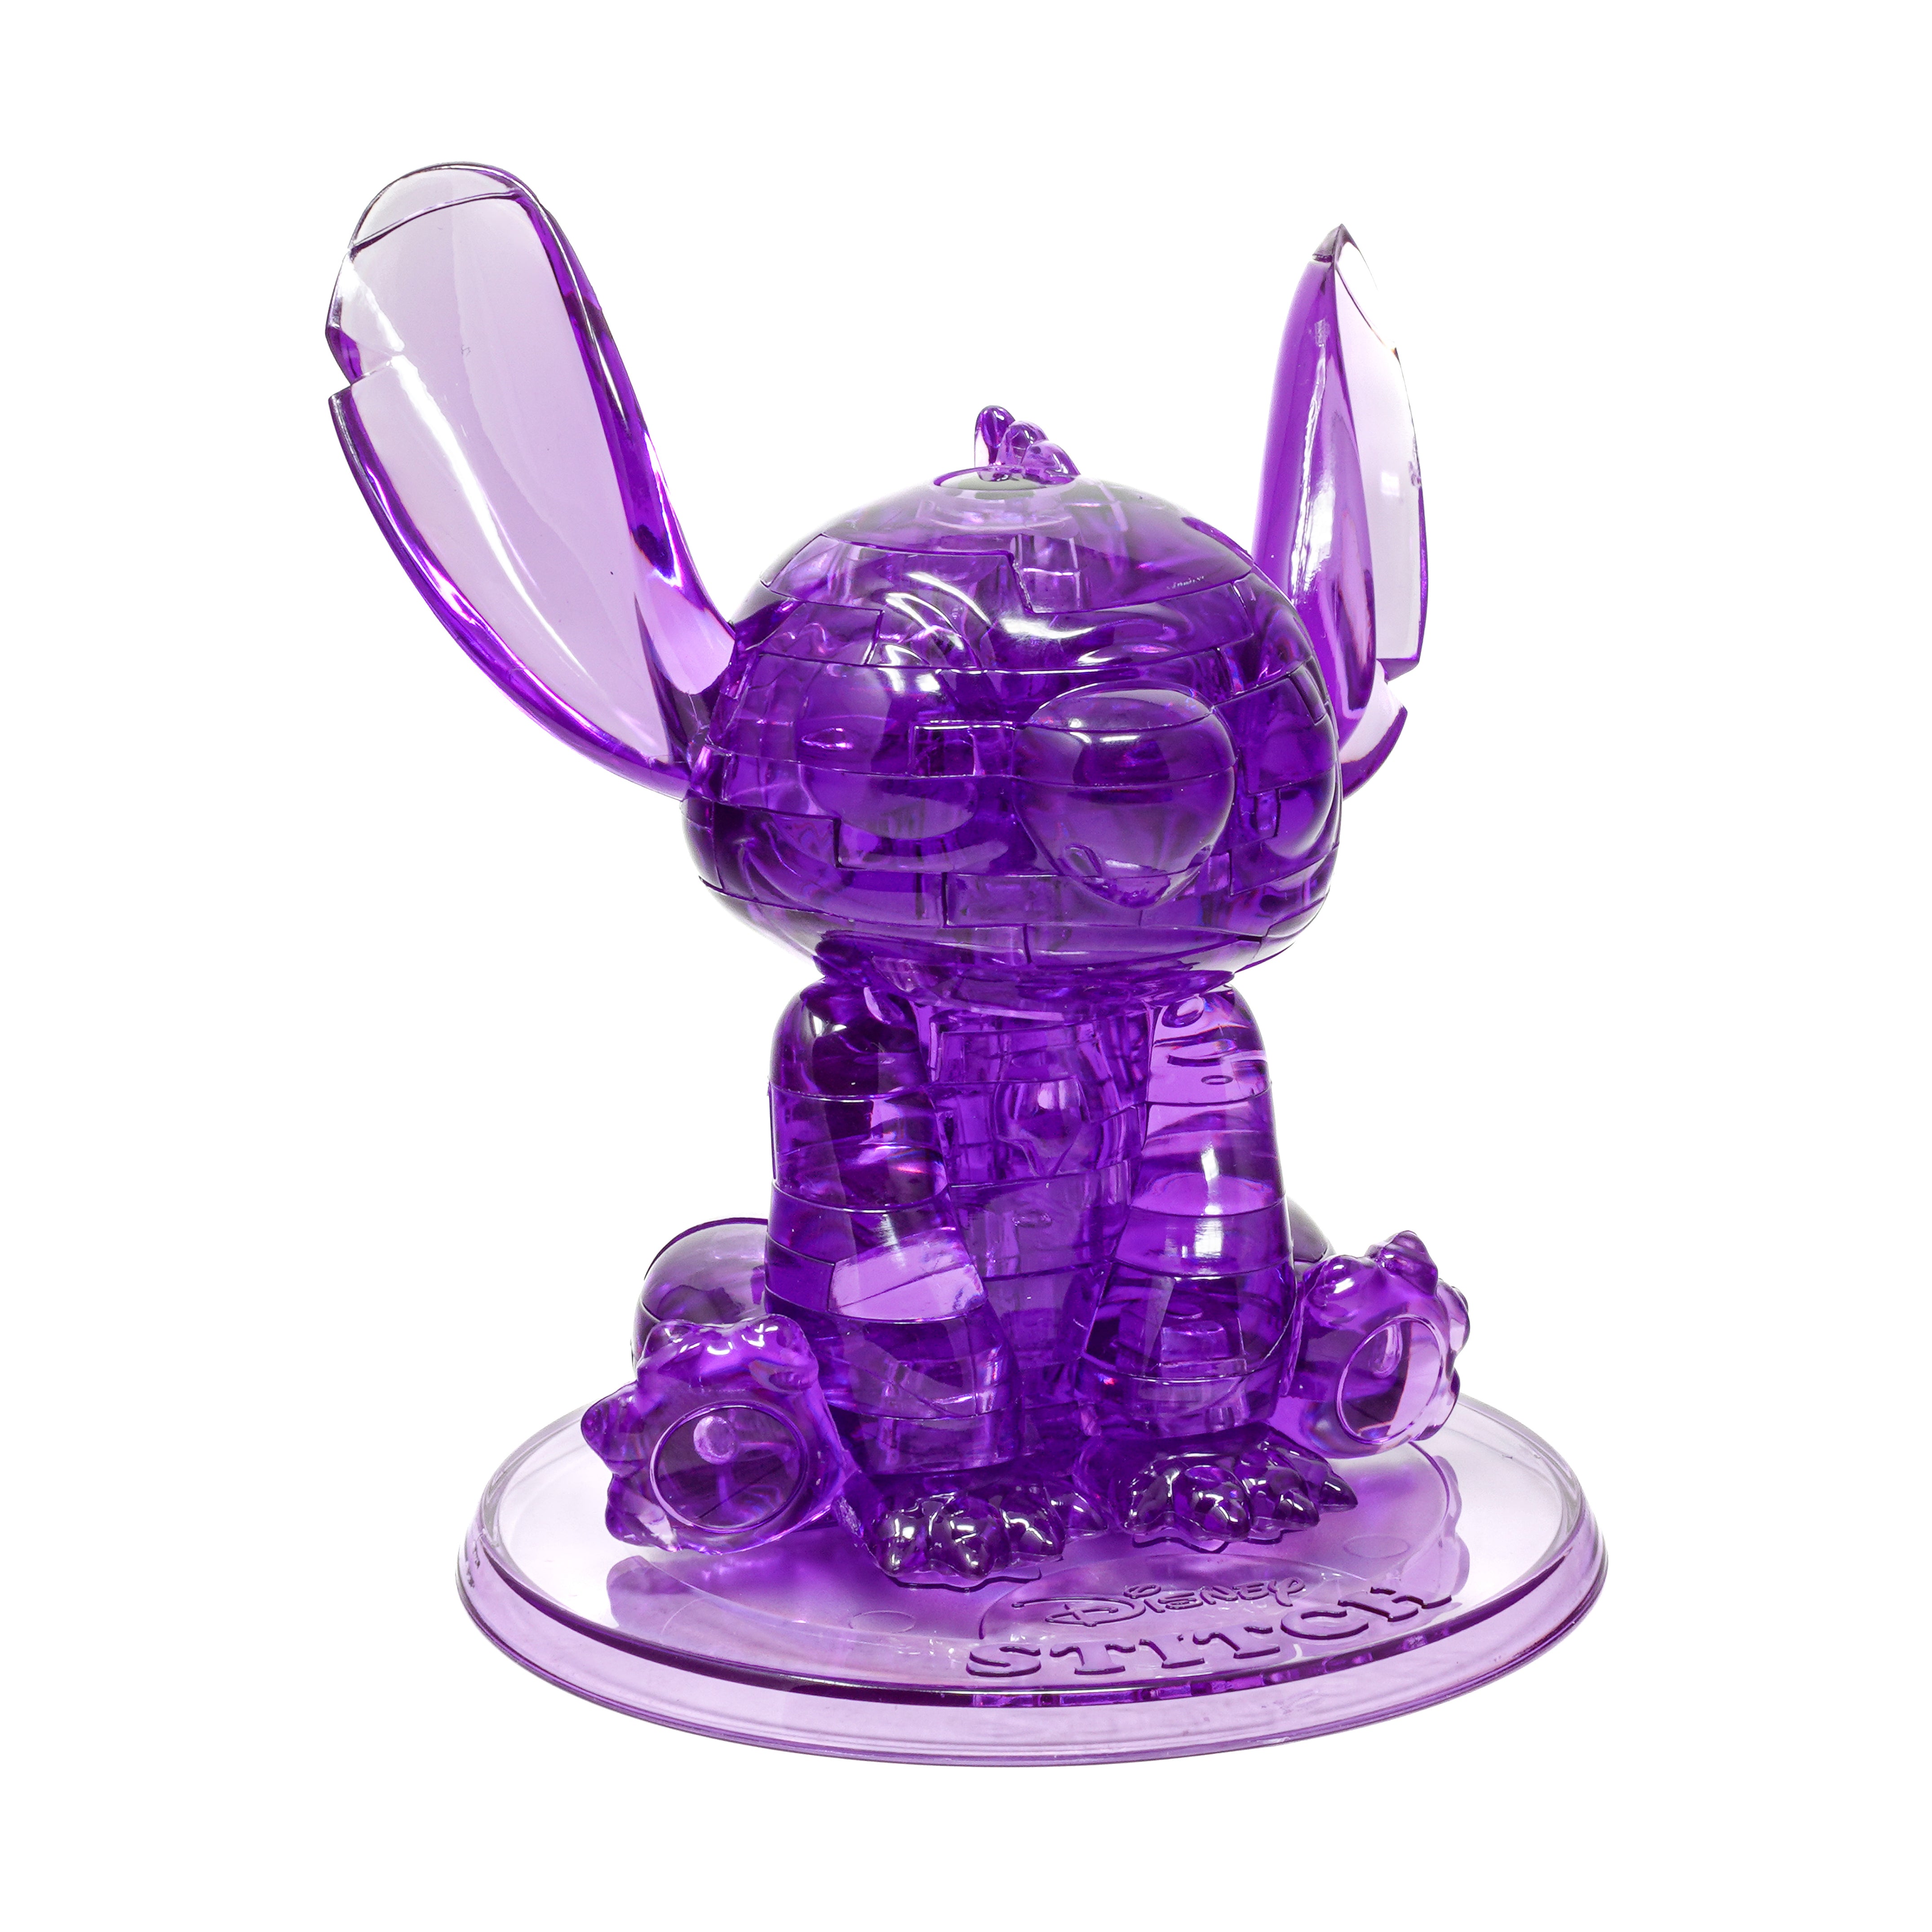 3D Crystal Puzzle - Disney Stitch (Purple): 43 Pcs